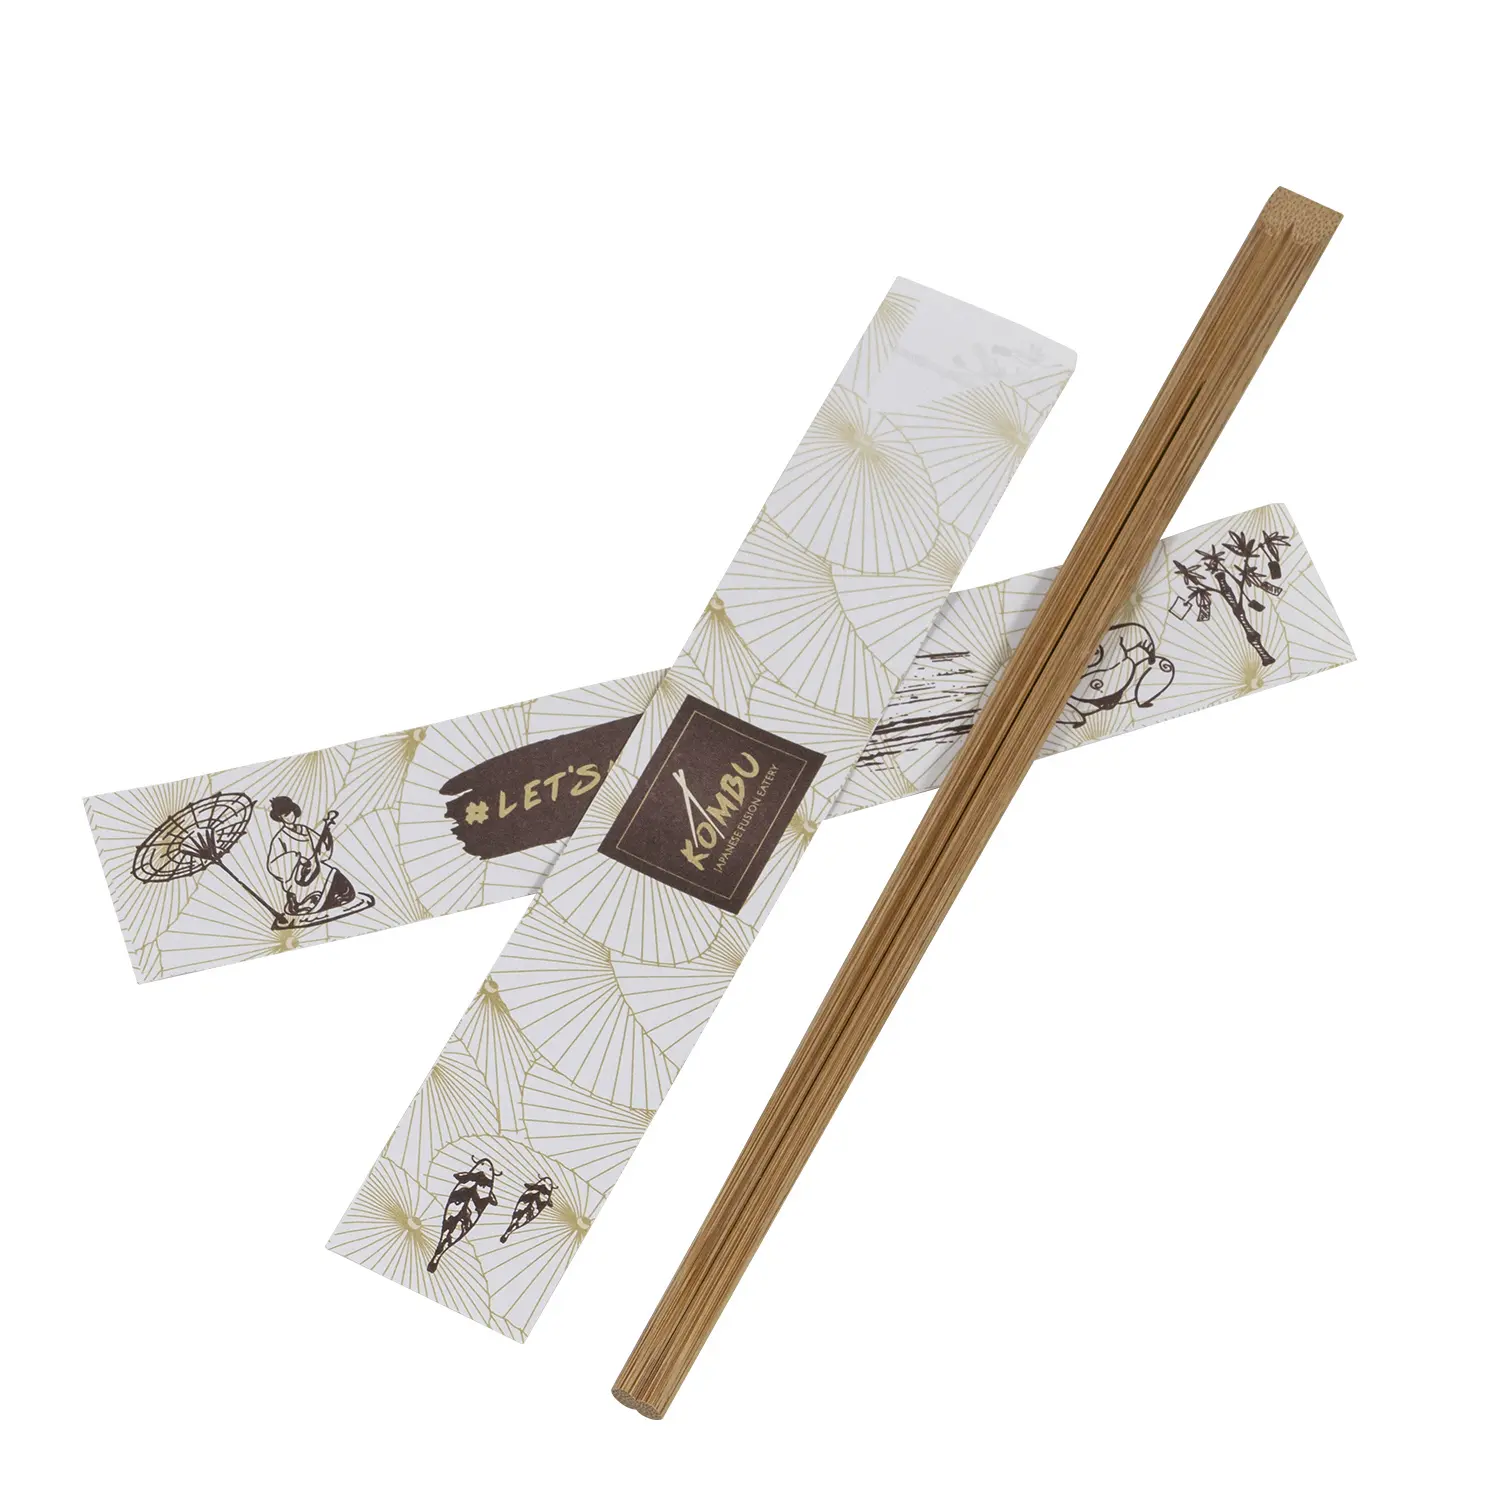 Hashi de pauzinho de bambu Tensoge descartável econômico para sushi japonês com impressão personalizada